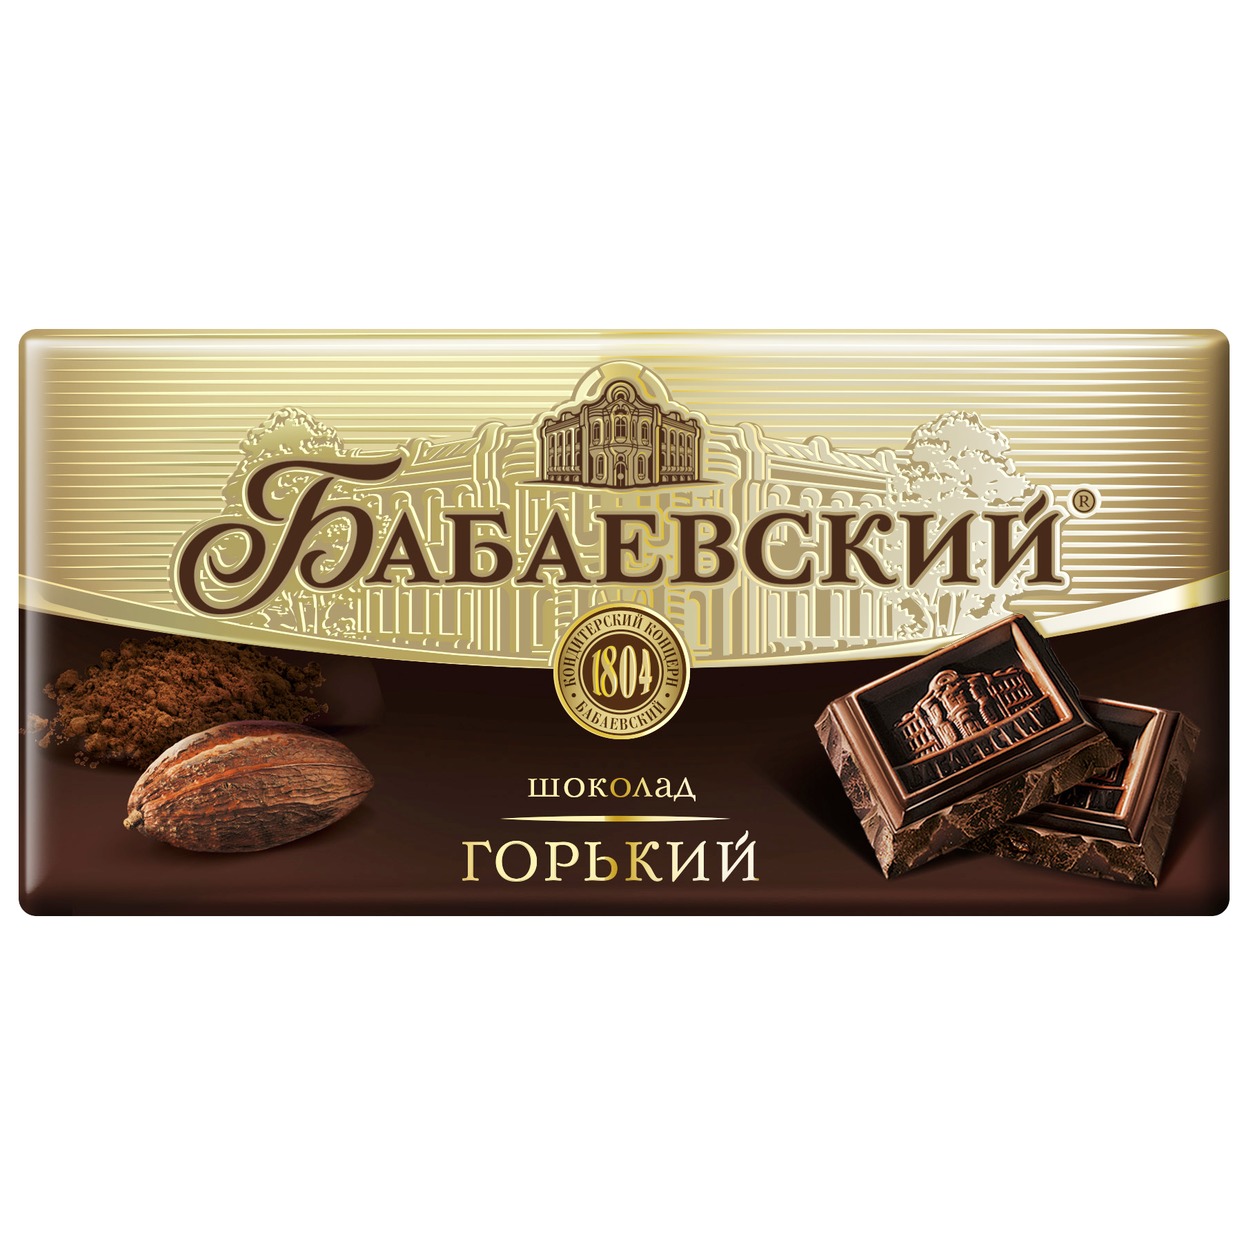 БАБАЕВ.Шоколад горький 100г по акции в Пятерочке